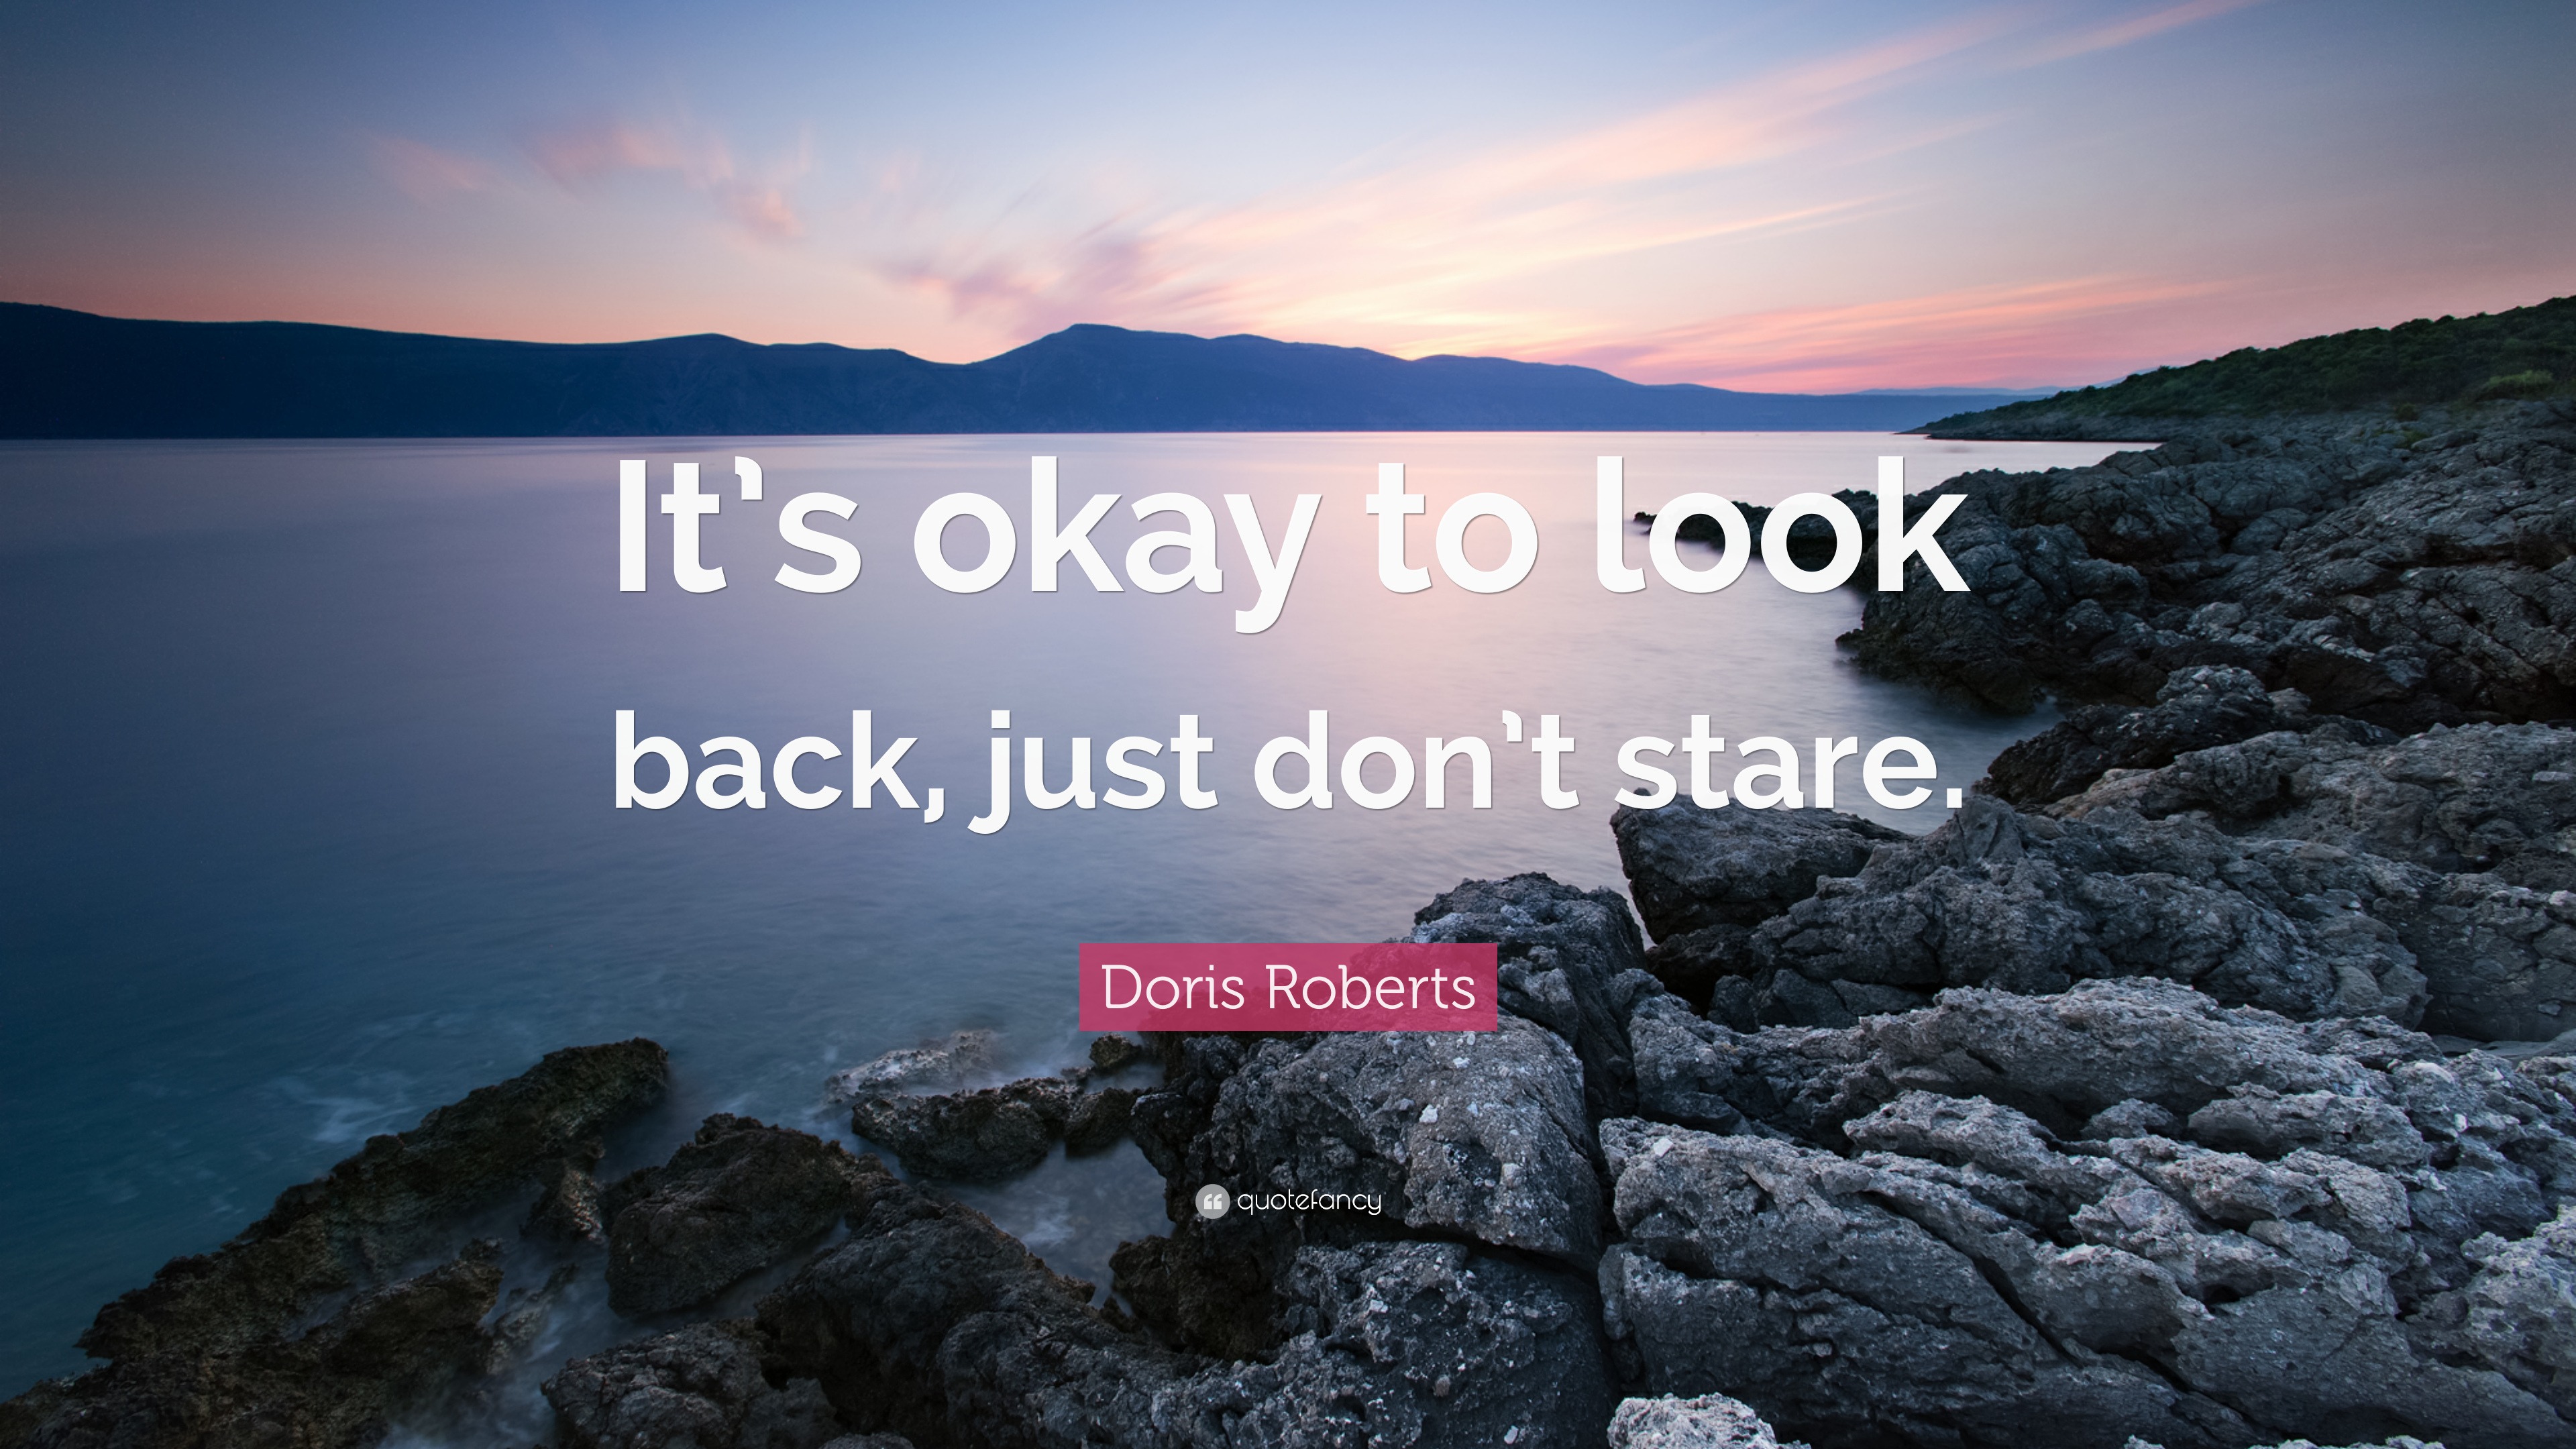 Doris Roberts Quote: “It's okay to look back